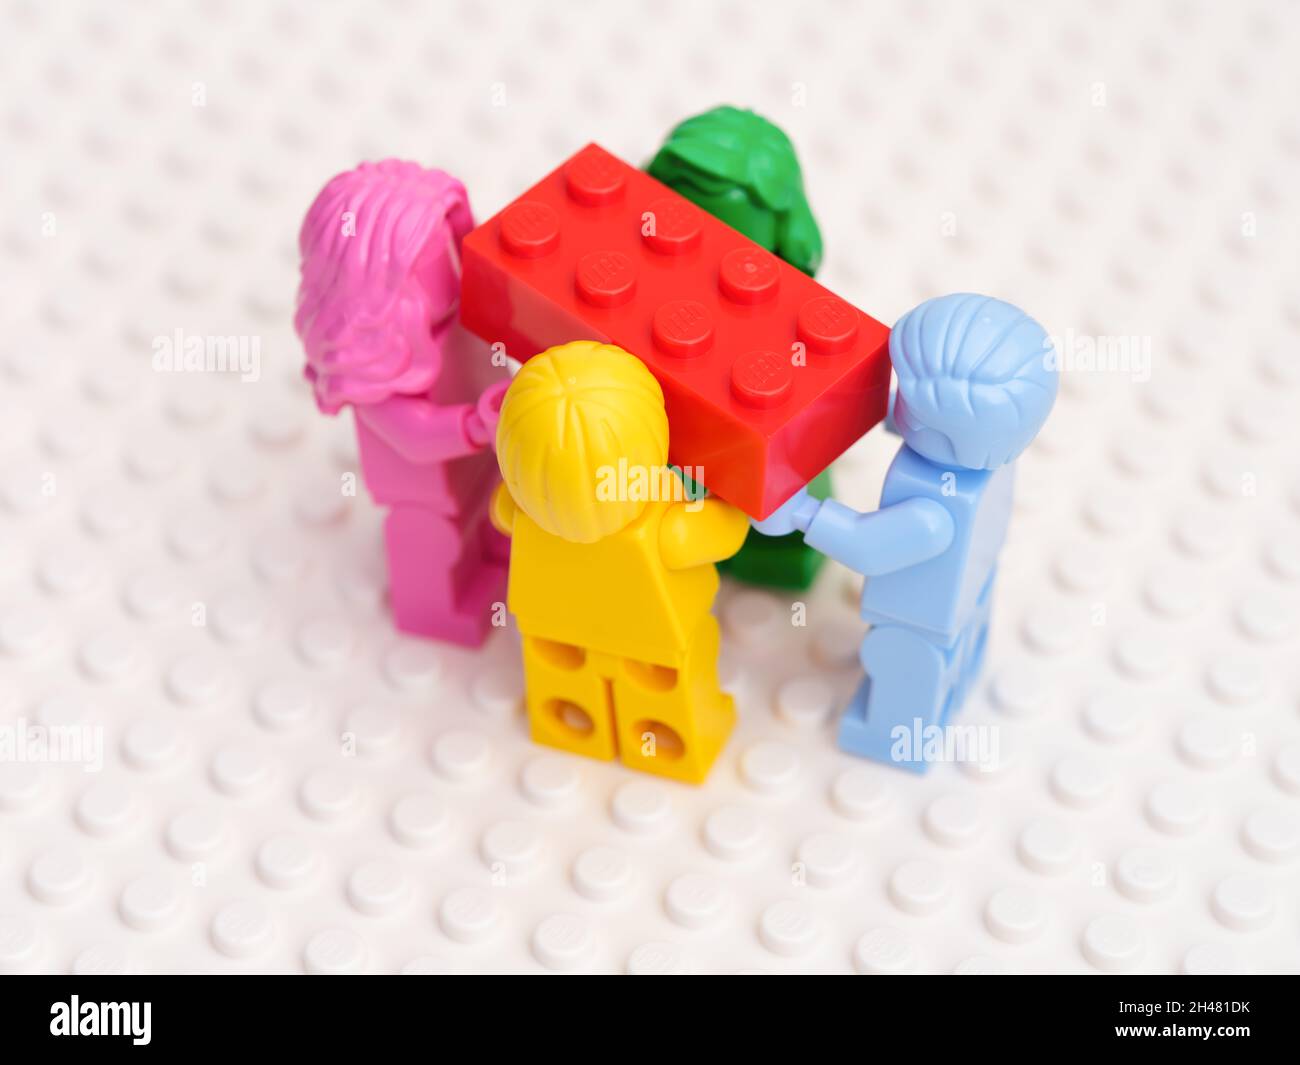 Lego rosa immagini e fotografie stock ad alta risoluzione - Alamy